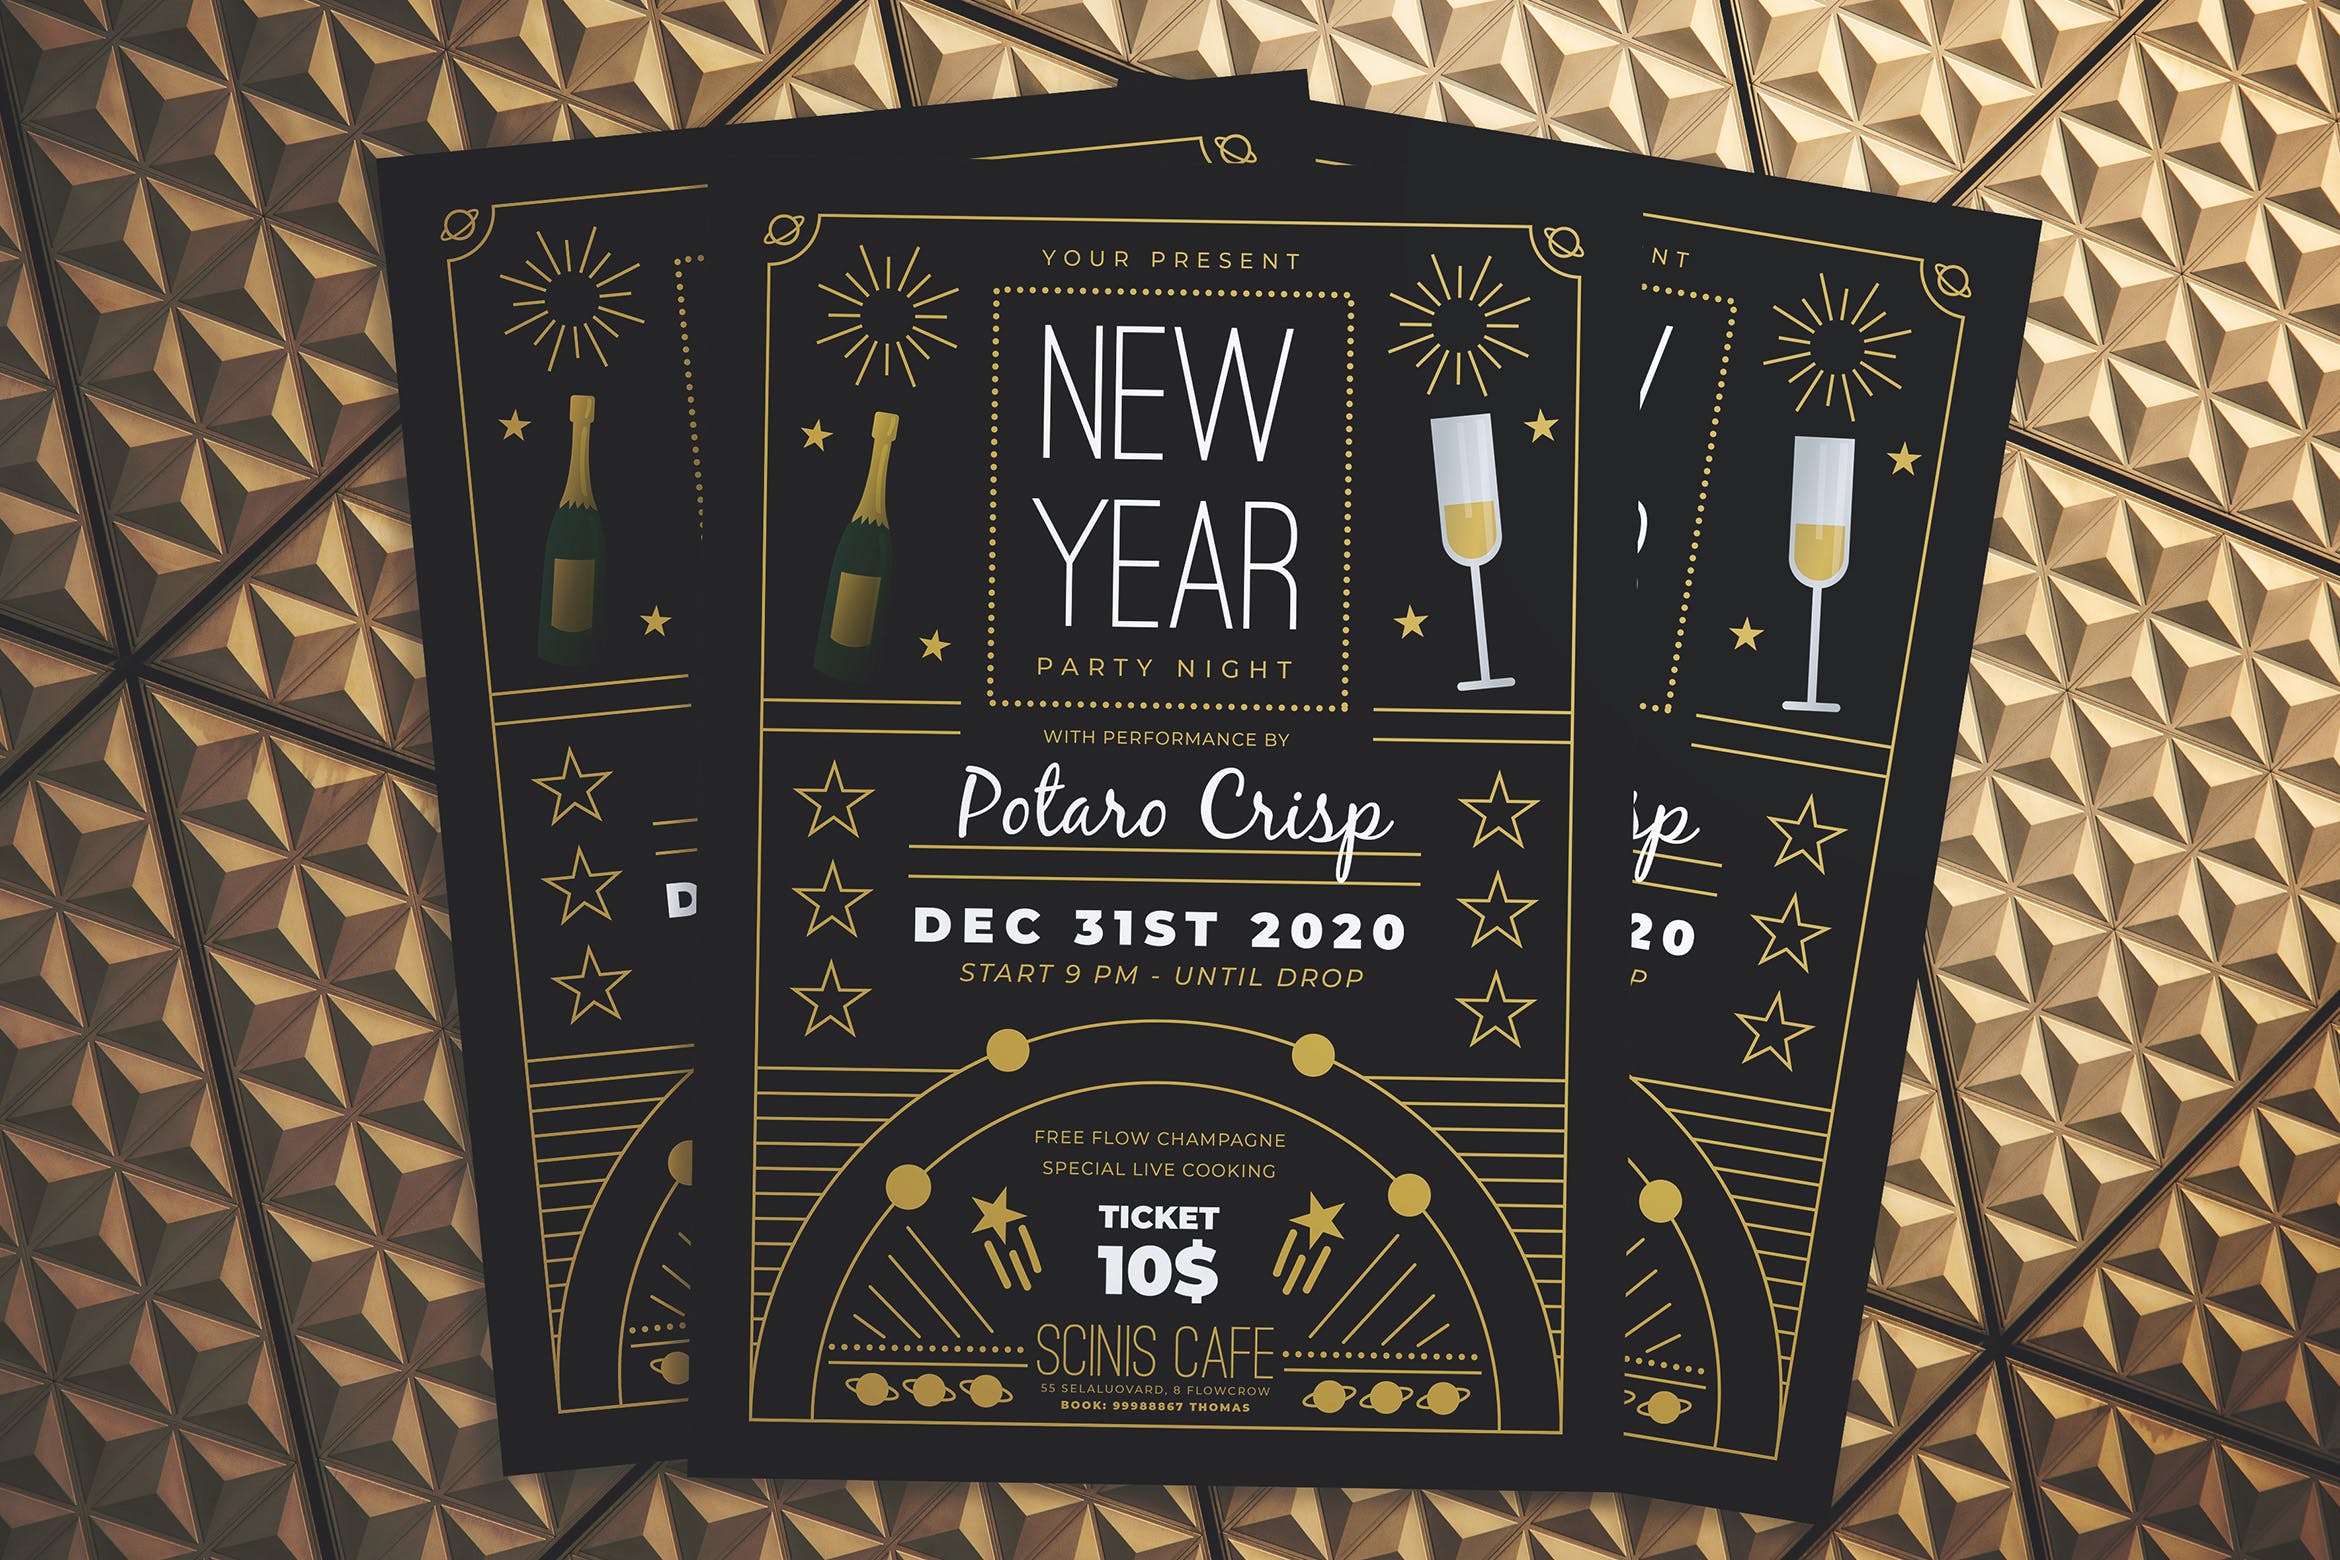 复古设计风格新年晚会海报传单素材库精选PSD模板 New Year Party Night Flyer插图